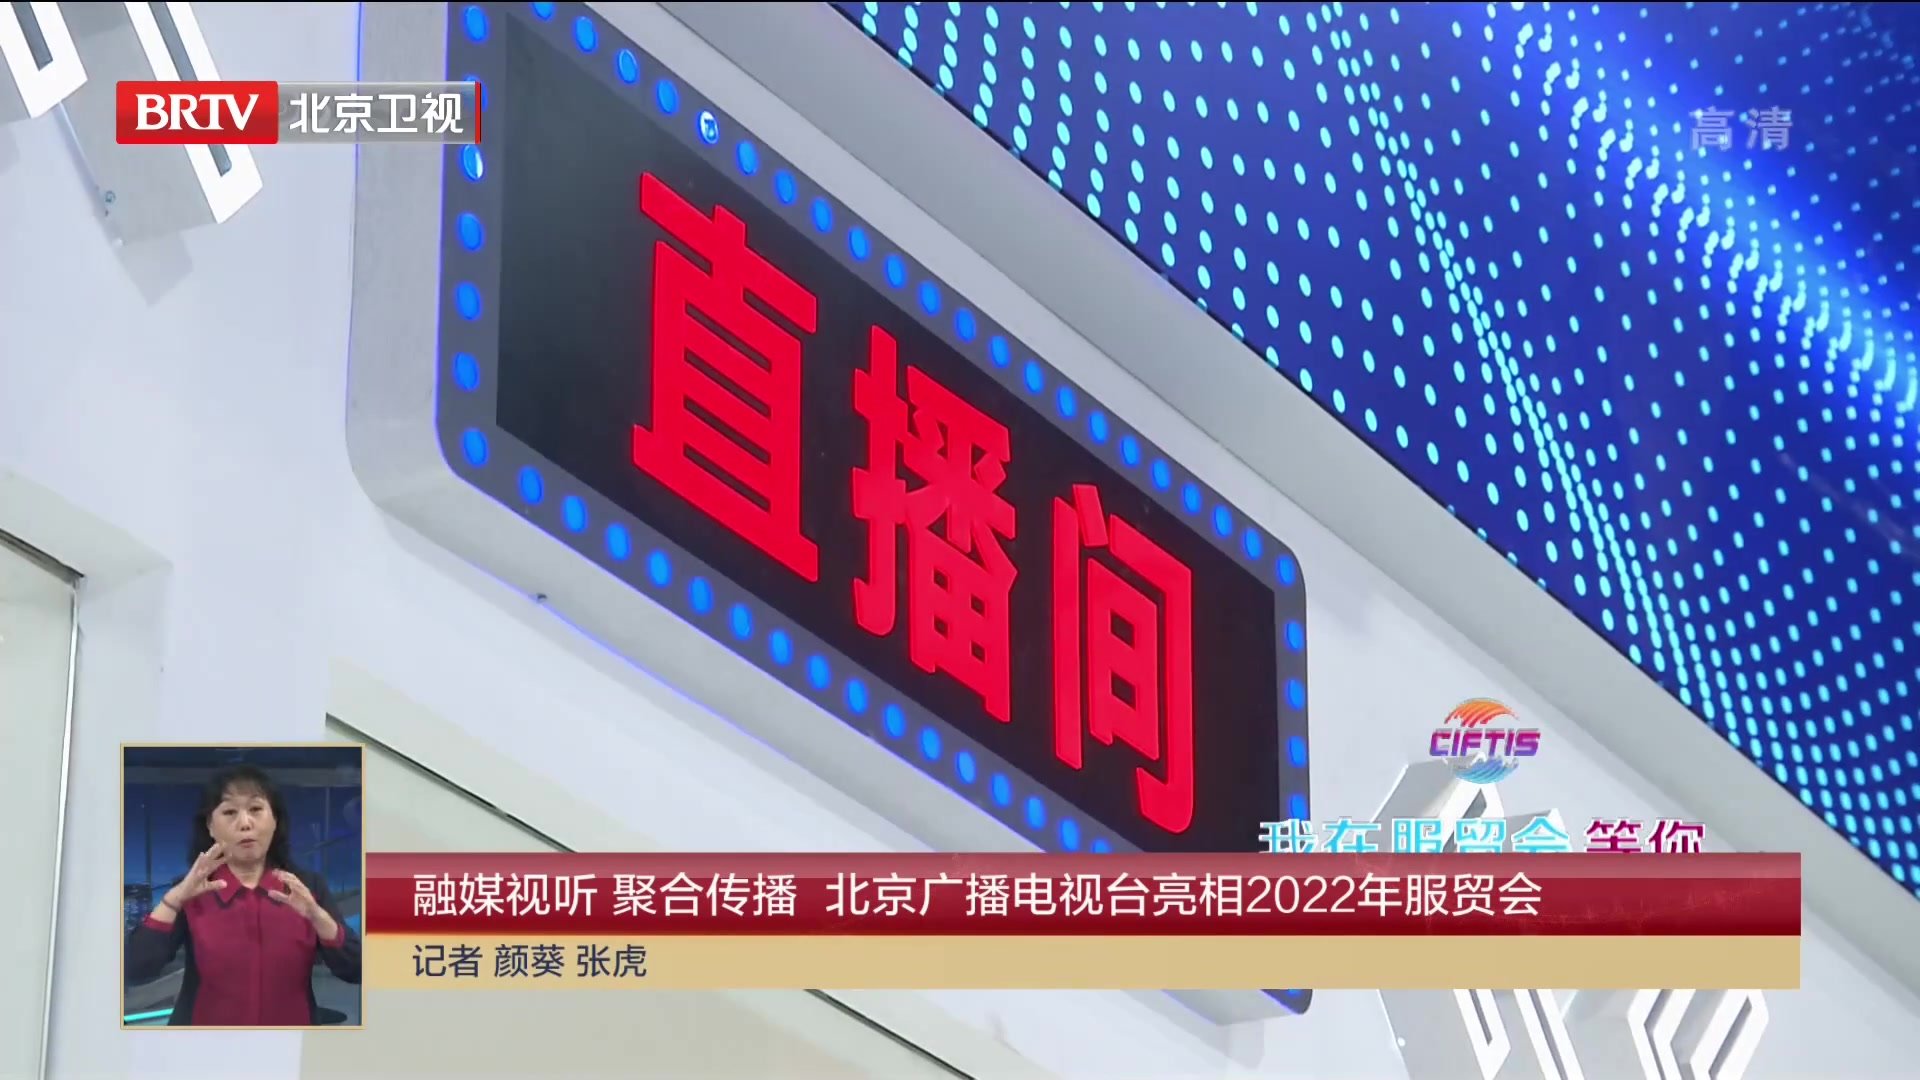 融媒视听 聚合传播 北京广播电视台亮相2022年服贸会